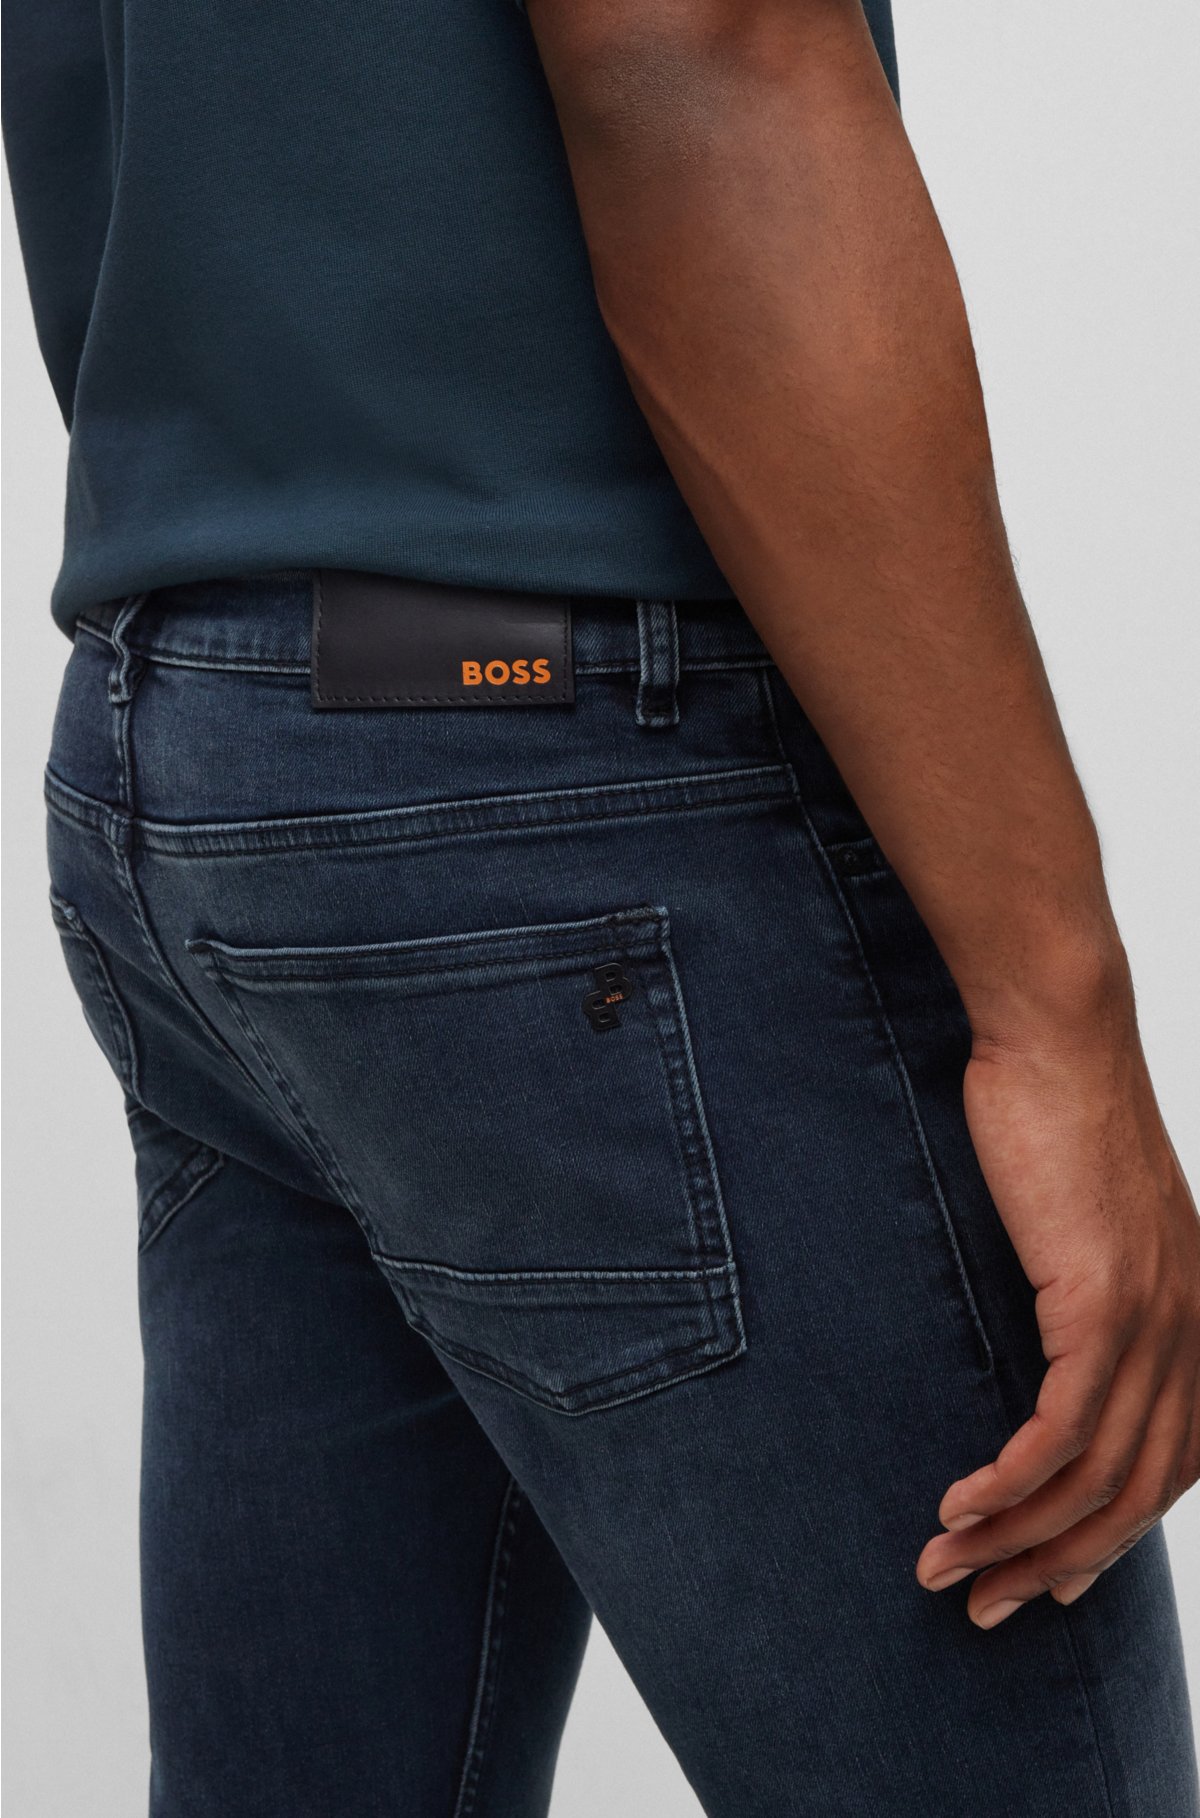 BOSS - in denim Slim-fit jeans dark-blue super-stretch